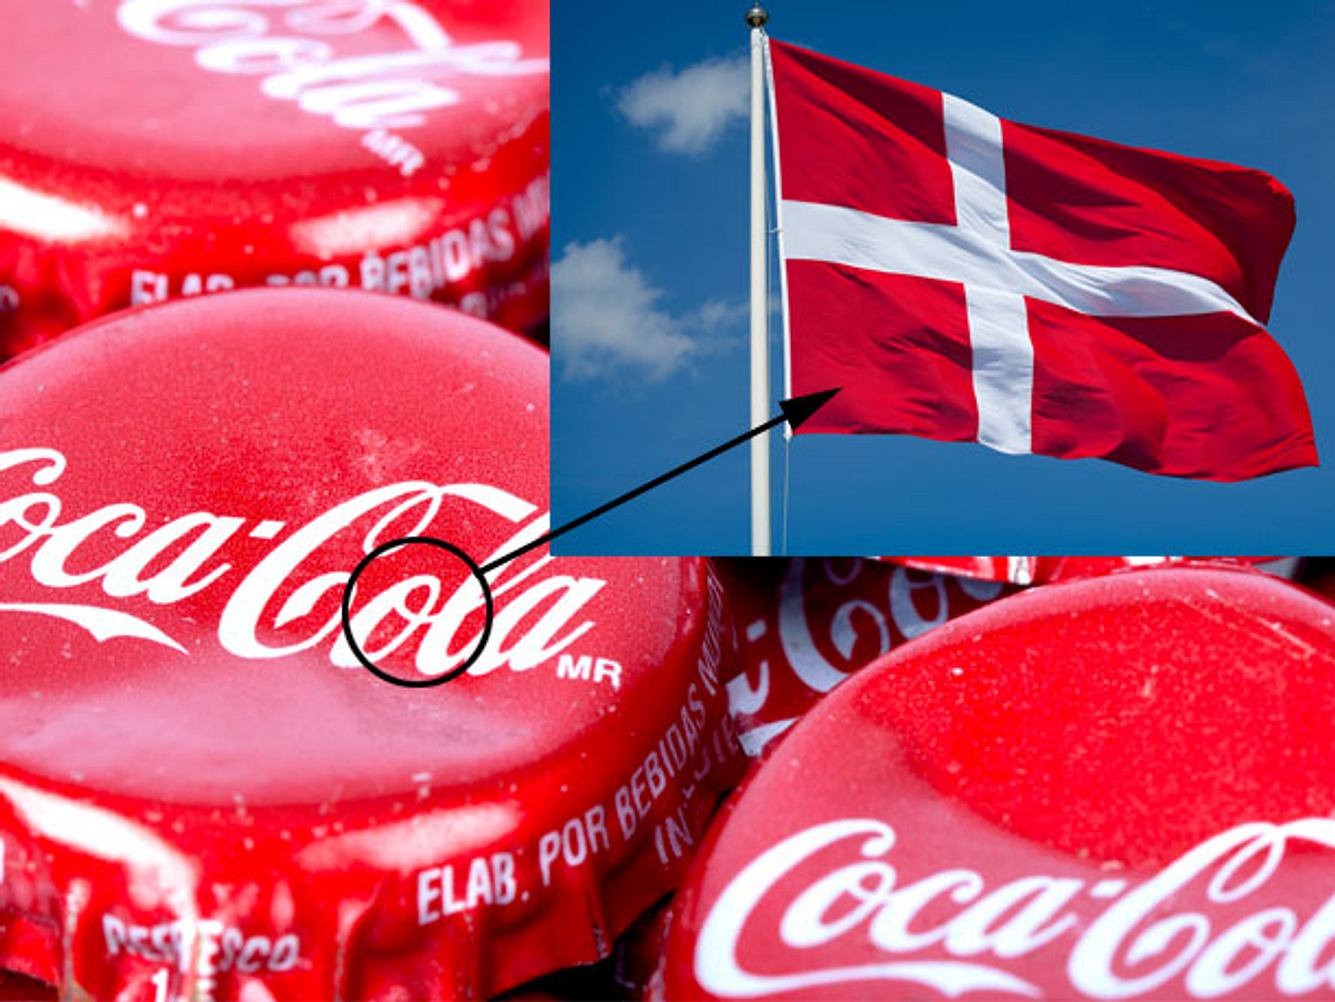 Die geheime Botschaft des Logos von CocaCola: Wenn du Cola trinkst, wirst du so glücklich wie die Dänen. In dem Logo versteckt sich die dänische Flagge.